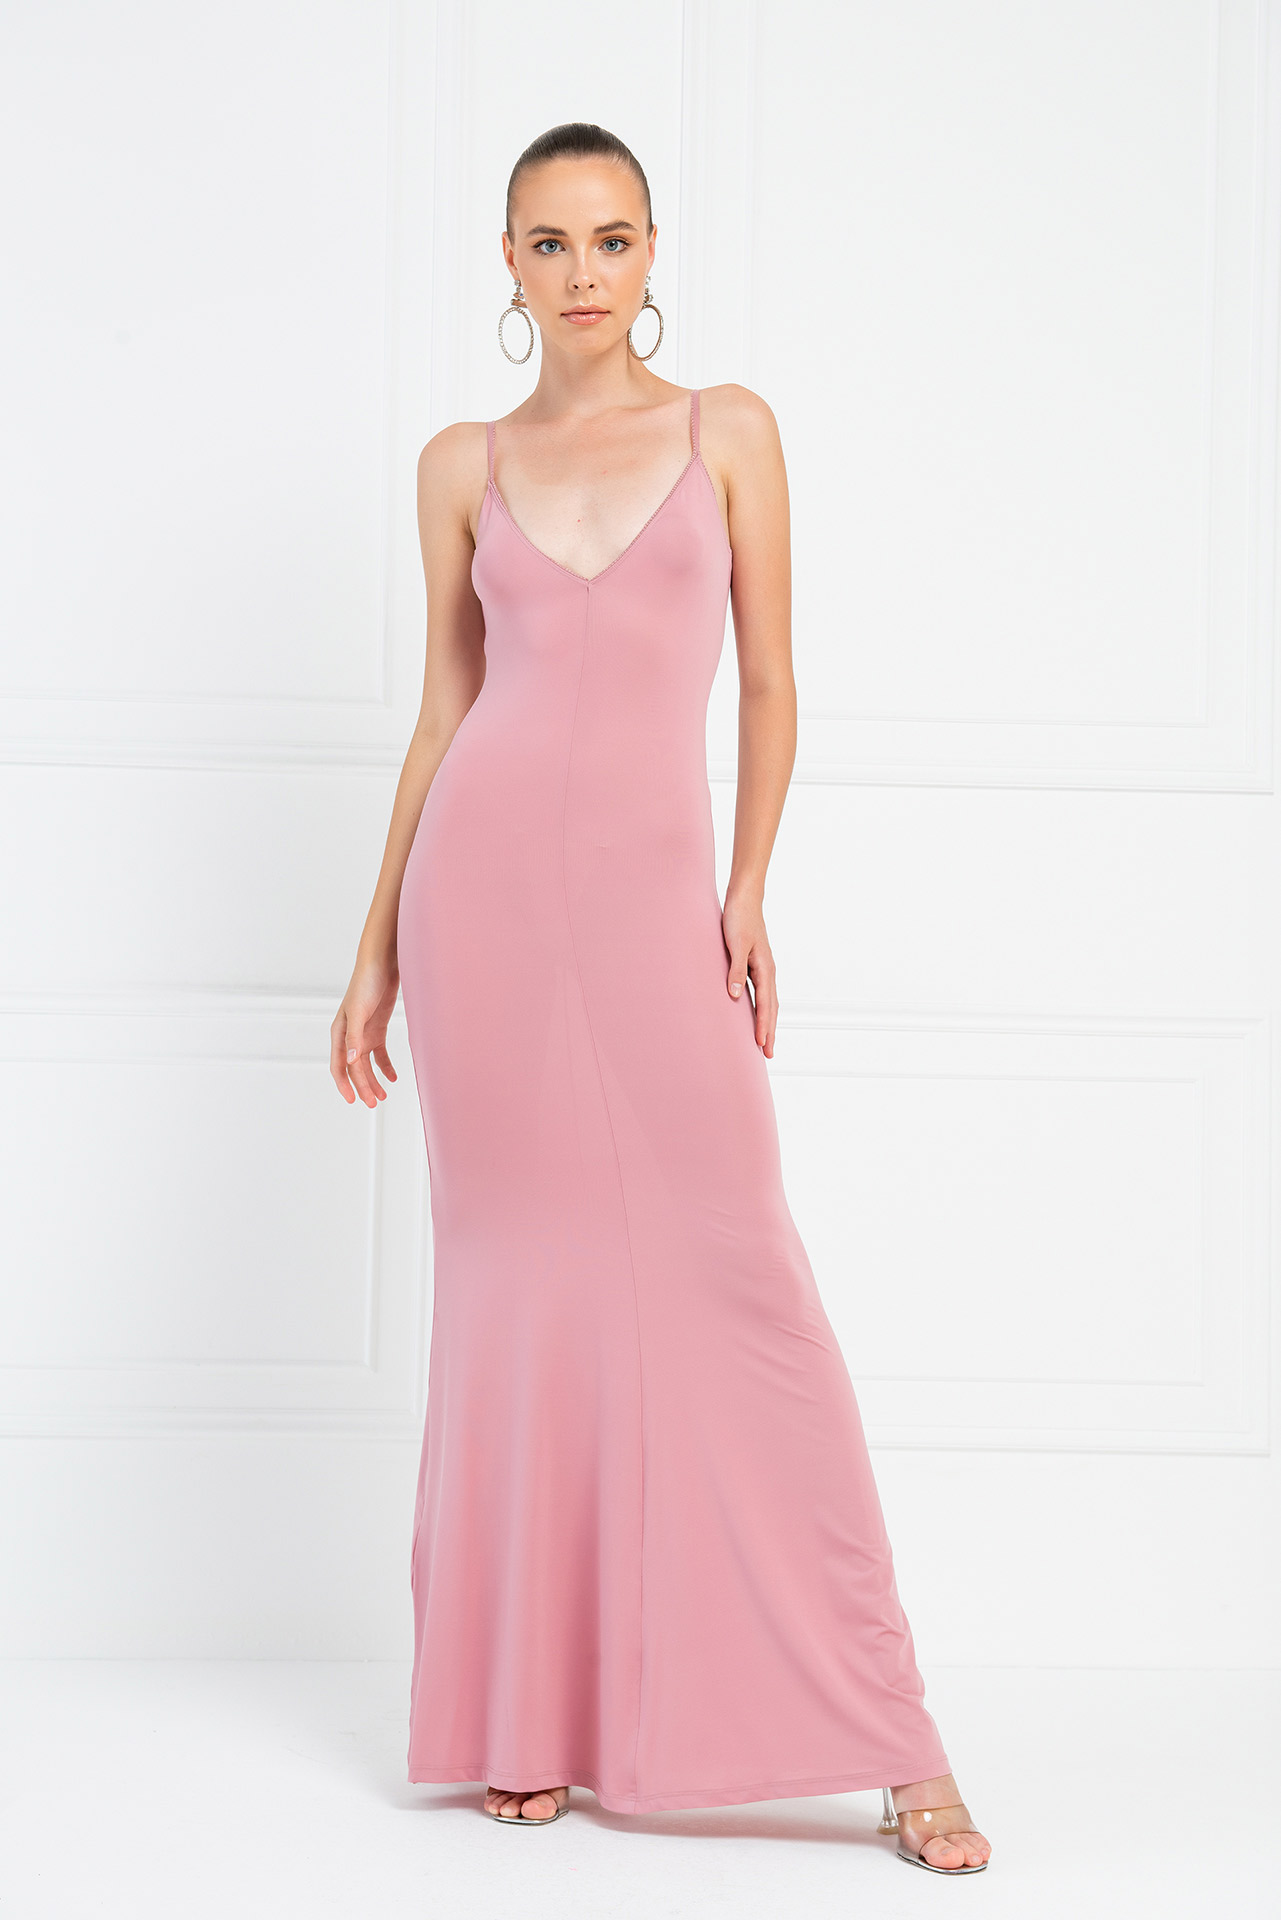 оптовая Light Rose Платье Макси с V-Образным Вырезом